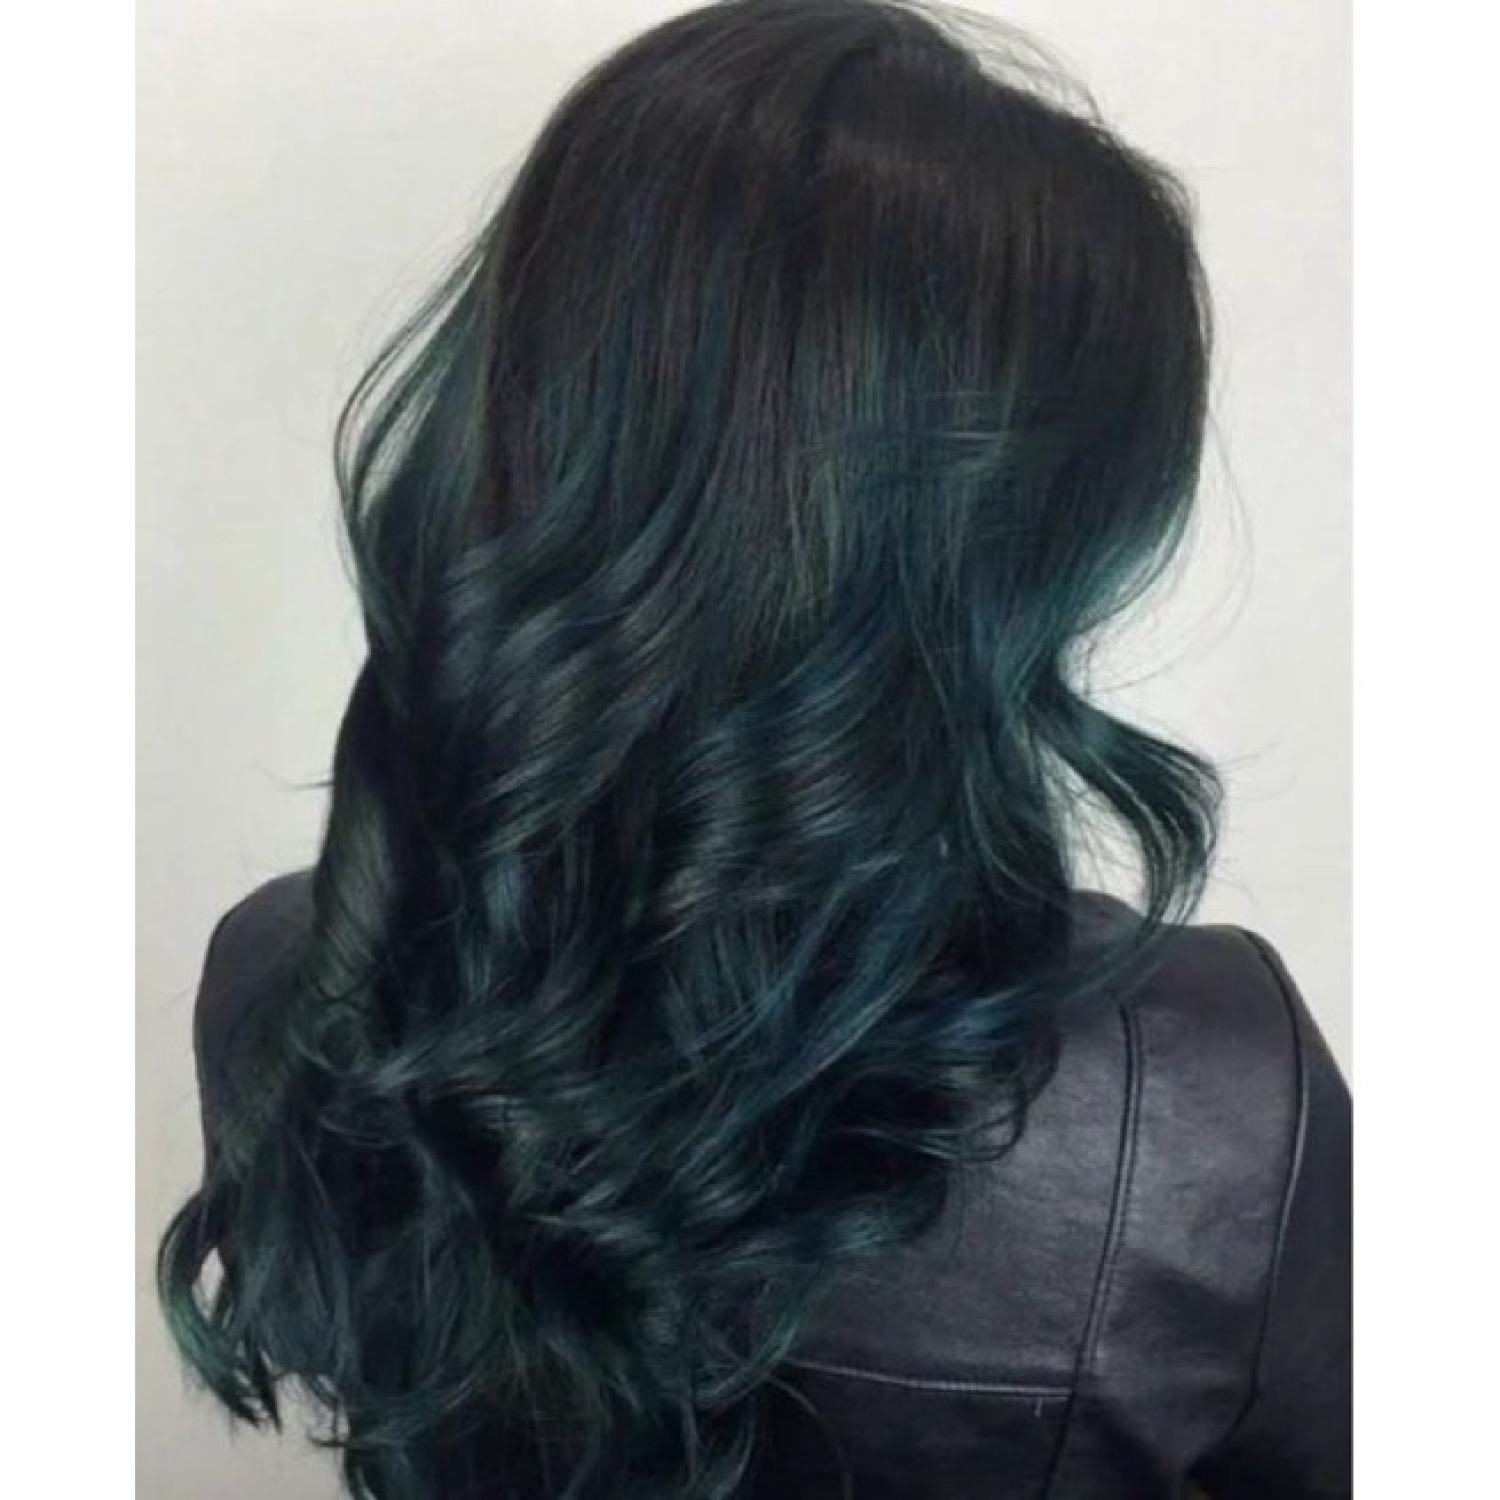 Kem nhuộm tóc màu xanh rêu đá là lựa chọn tuyệt vời để thay đổi kiểu tóc của bạn. Với chất kem dưỡng đặc biệt, sản phẩm này không chỉ giúp nhuộm màu tóc dễ dàng mà còn giữ cho tóc của bạn luôn mềm mượt và bóng khỏe suốt cả ngày.